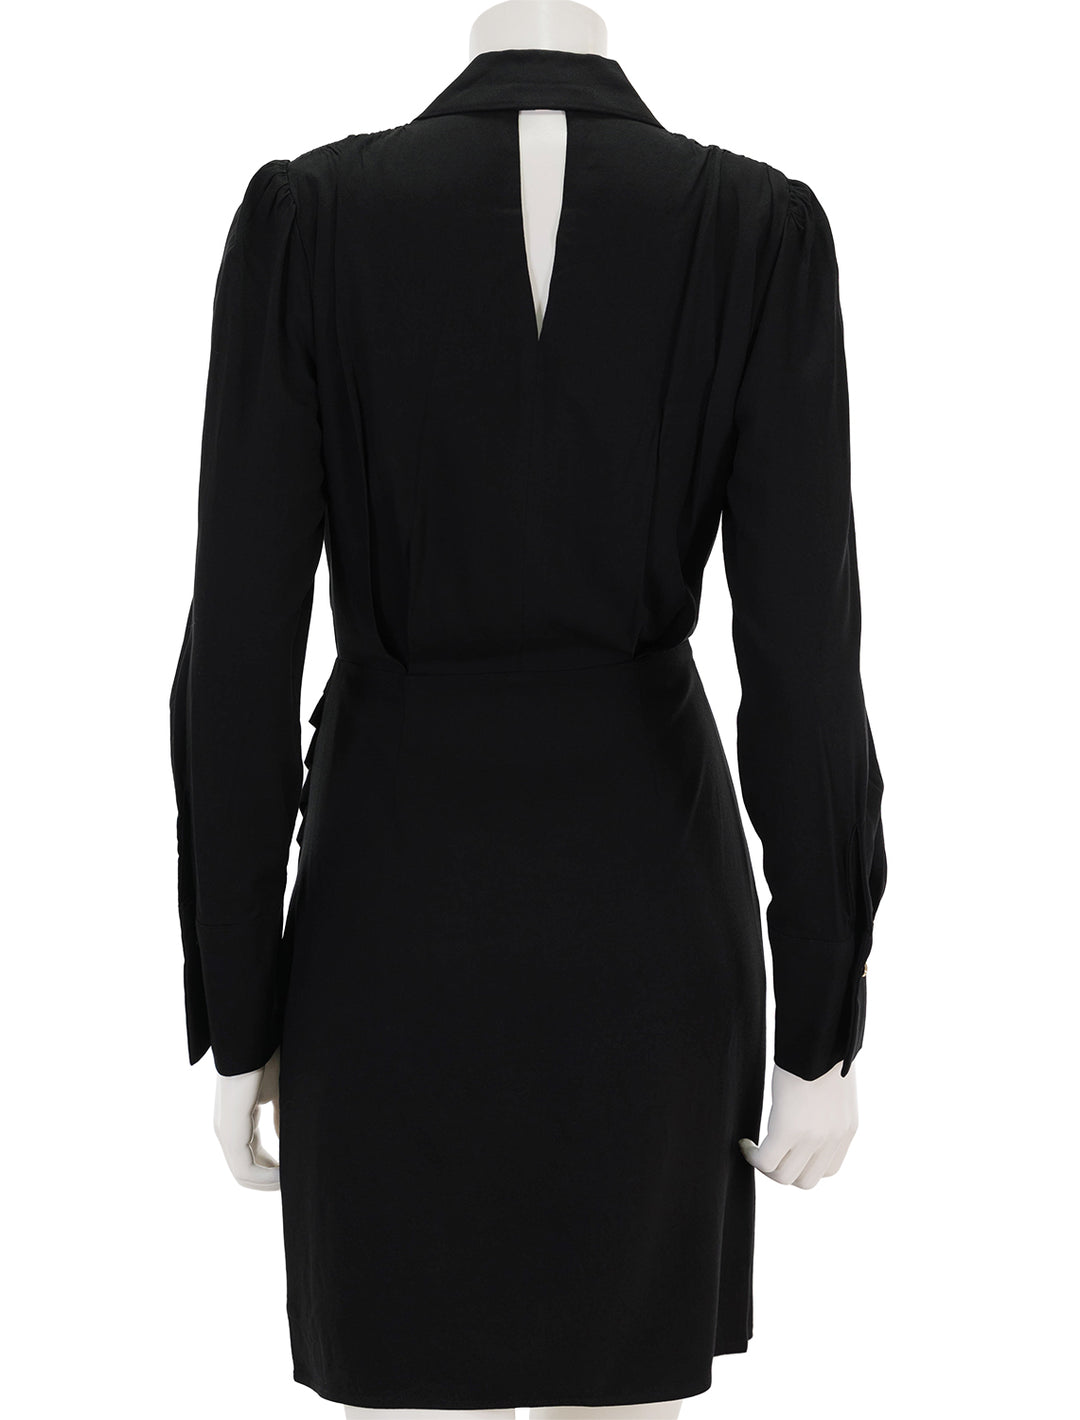 Back view of Suncoo Paris' cristel dress in noir.